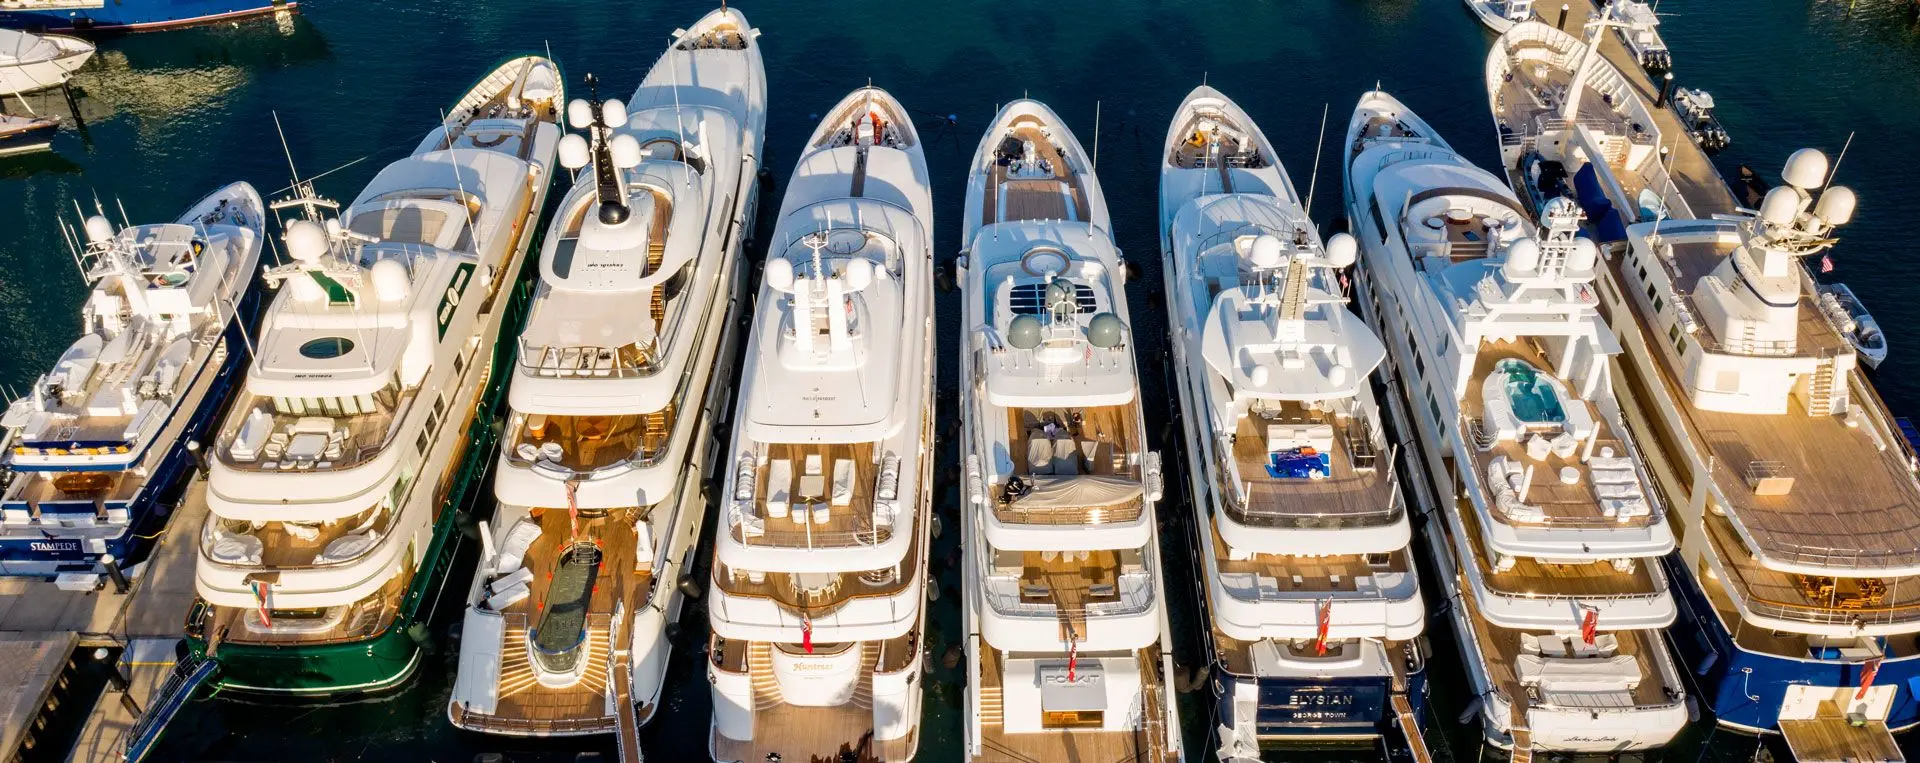 BusinessAtSea-Yacht.jpg